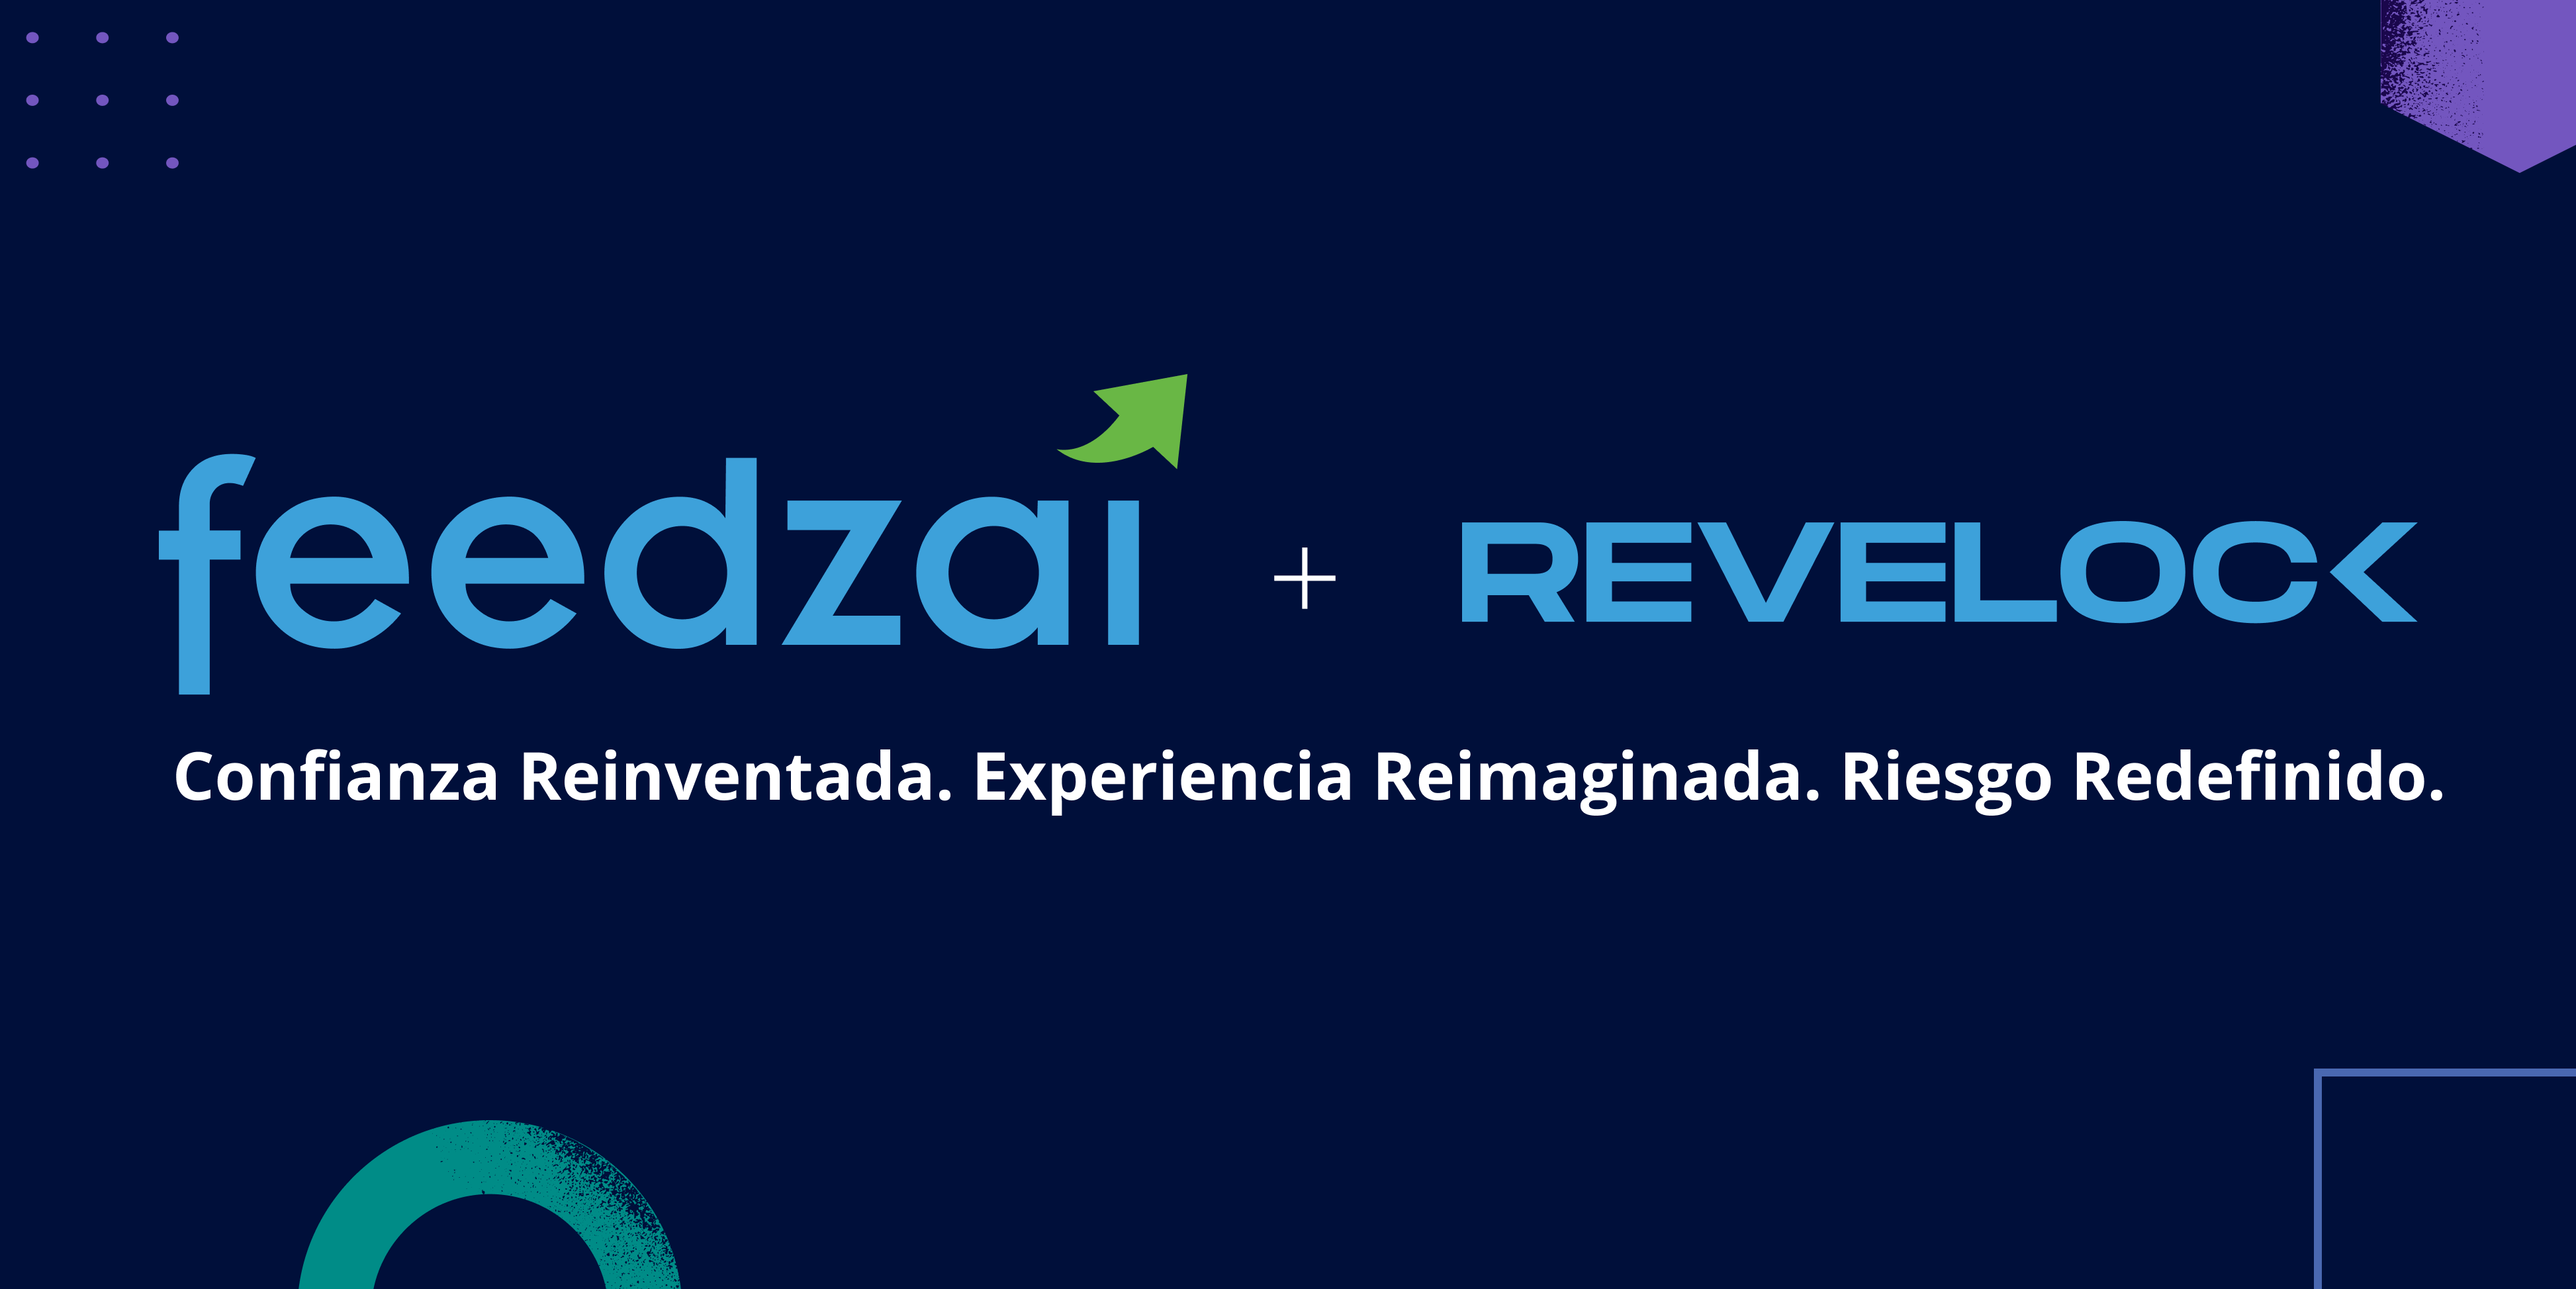 Feedzai reinventando la industria de servicios financieros con la adquisición de Revelock